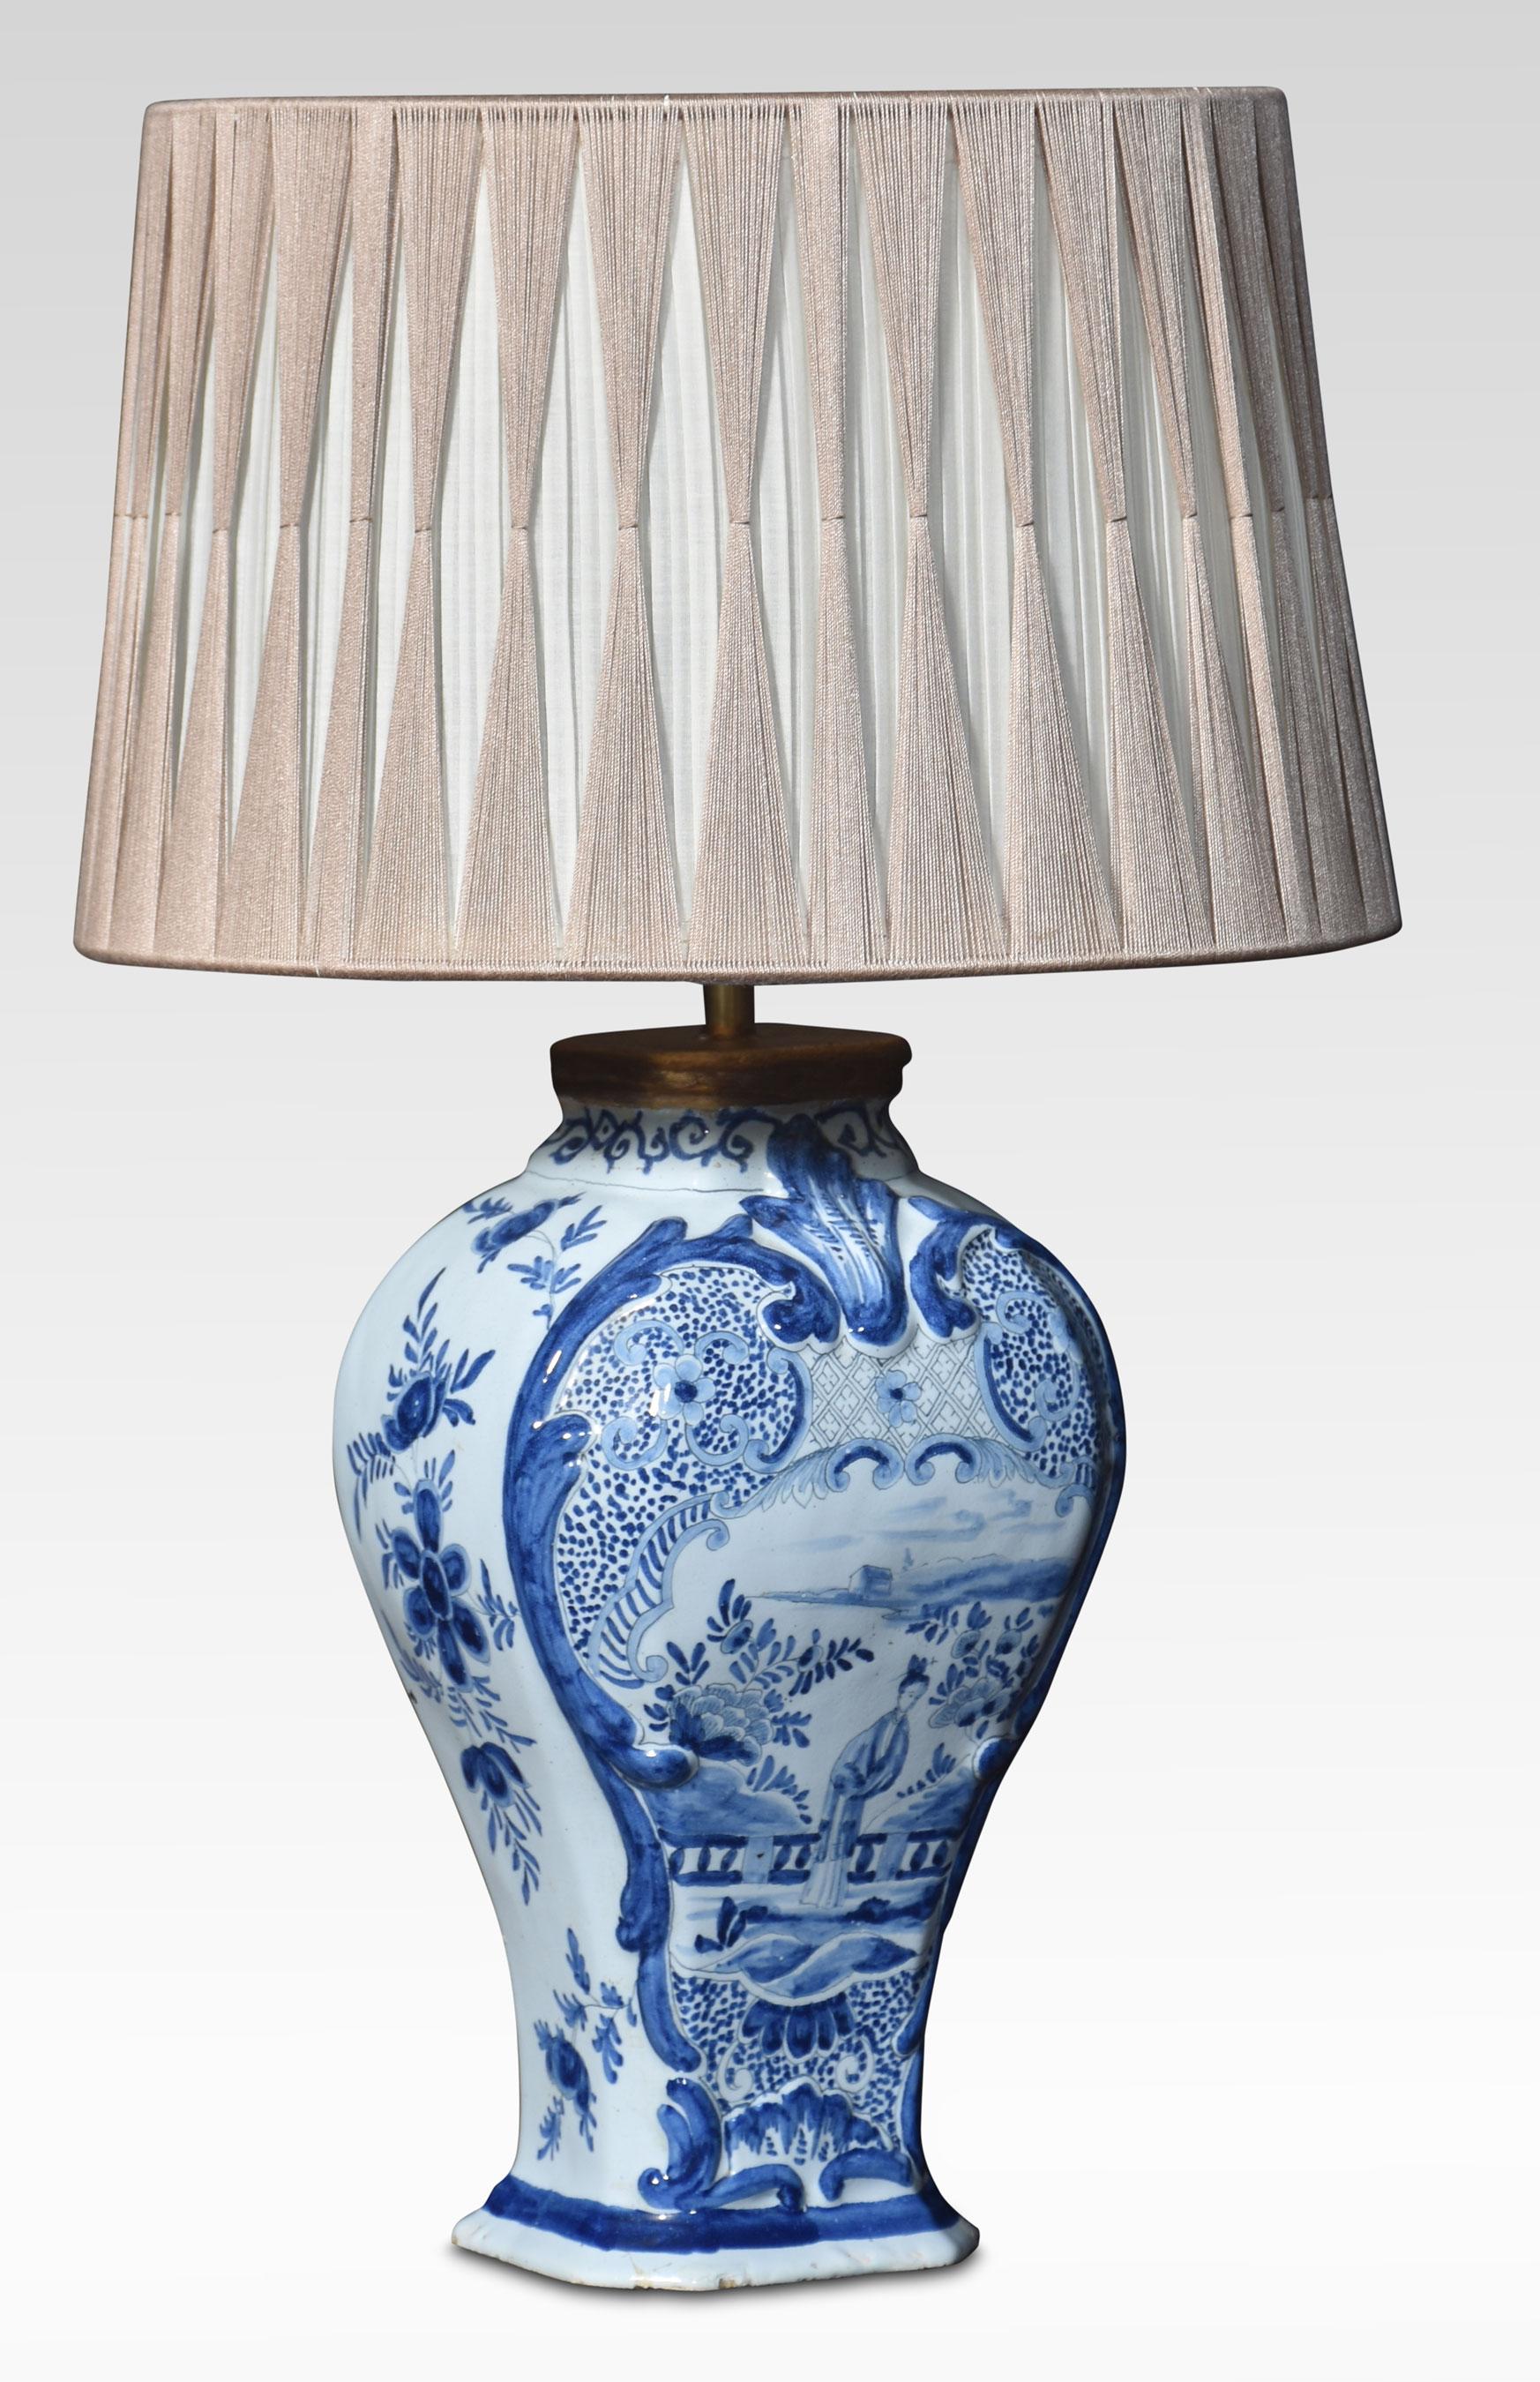 Lampe-vase chinoise bleu et blanc décorée de scènes orientales et de feuillages. La lampe a subi quelques réparations.
Dimensions
Hauteur 15,5 pouces
Largeur 7.5 pouces
Profondeur 7,5 pouces